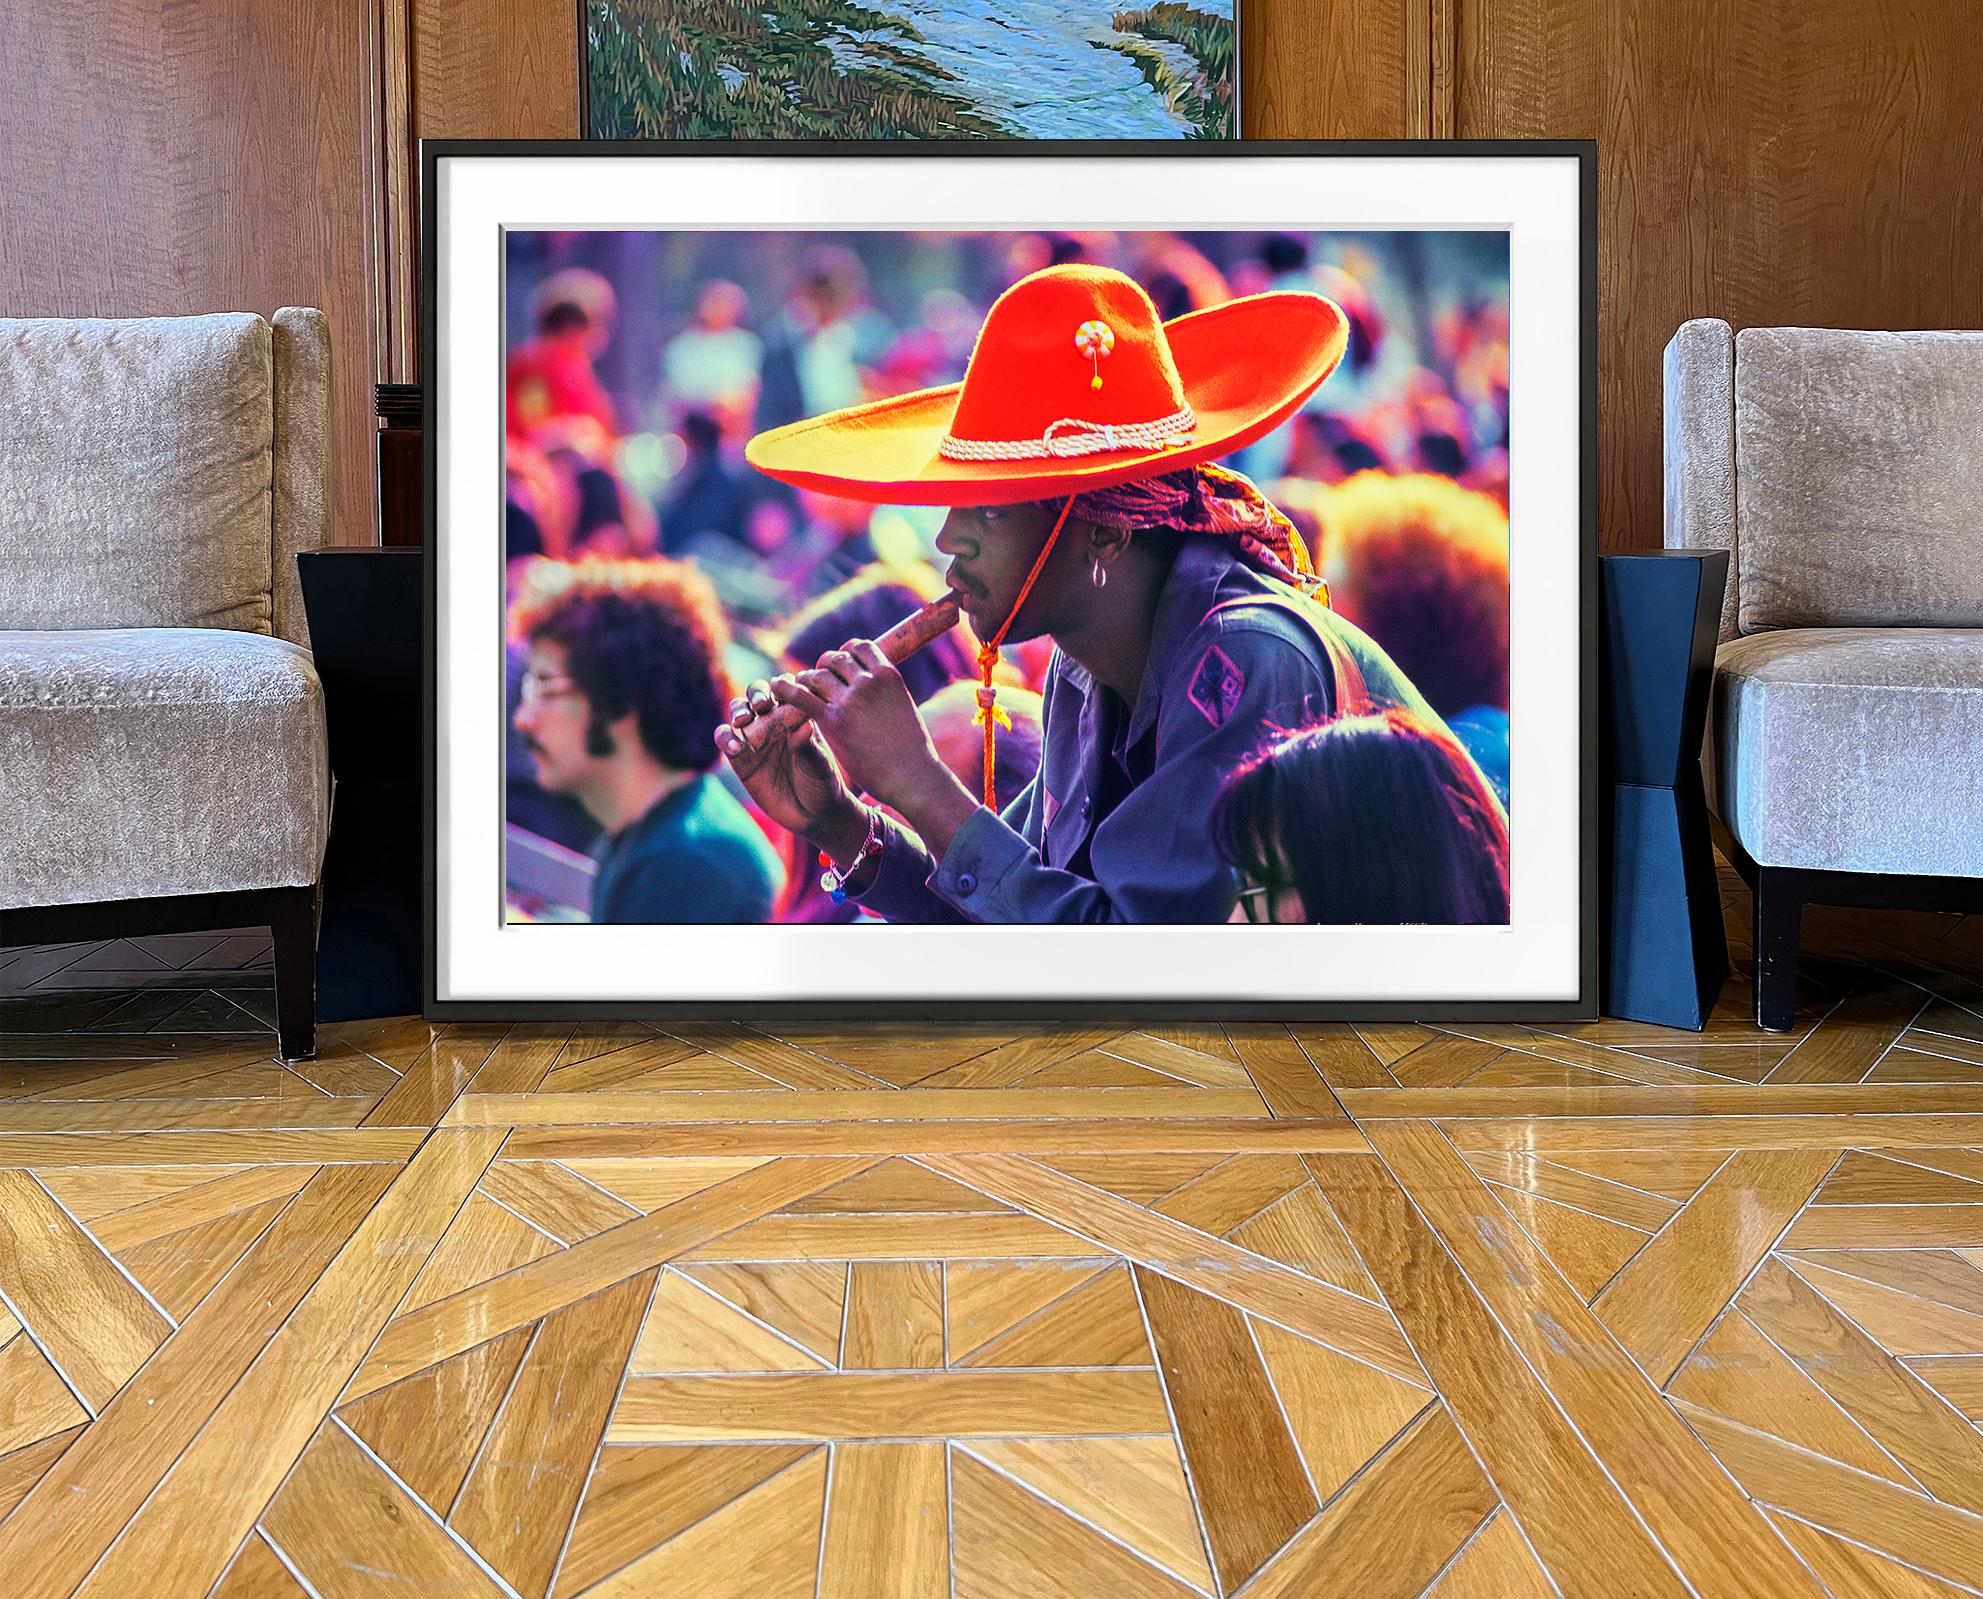  Un hippie noir, coiffé d'un majestueux sombrero rouge, joue de la flûte lors d'un festival de musique à Central Park en 1969.  C'est cette même année que la 